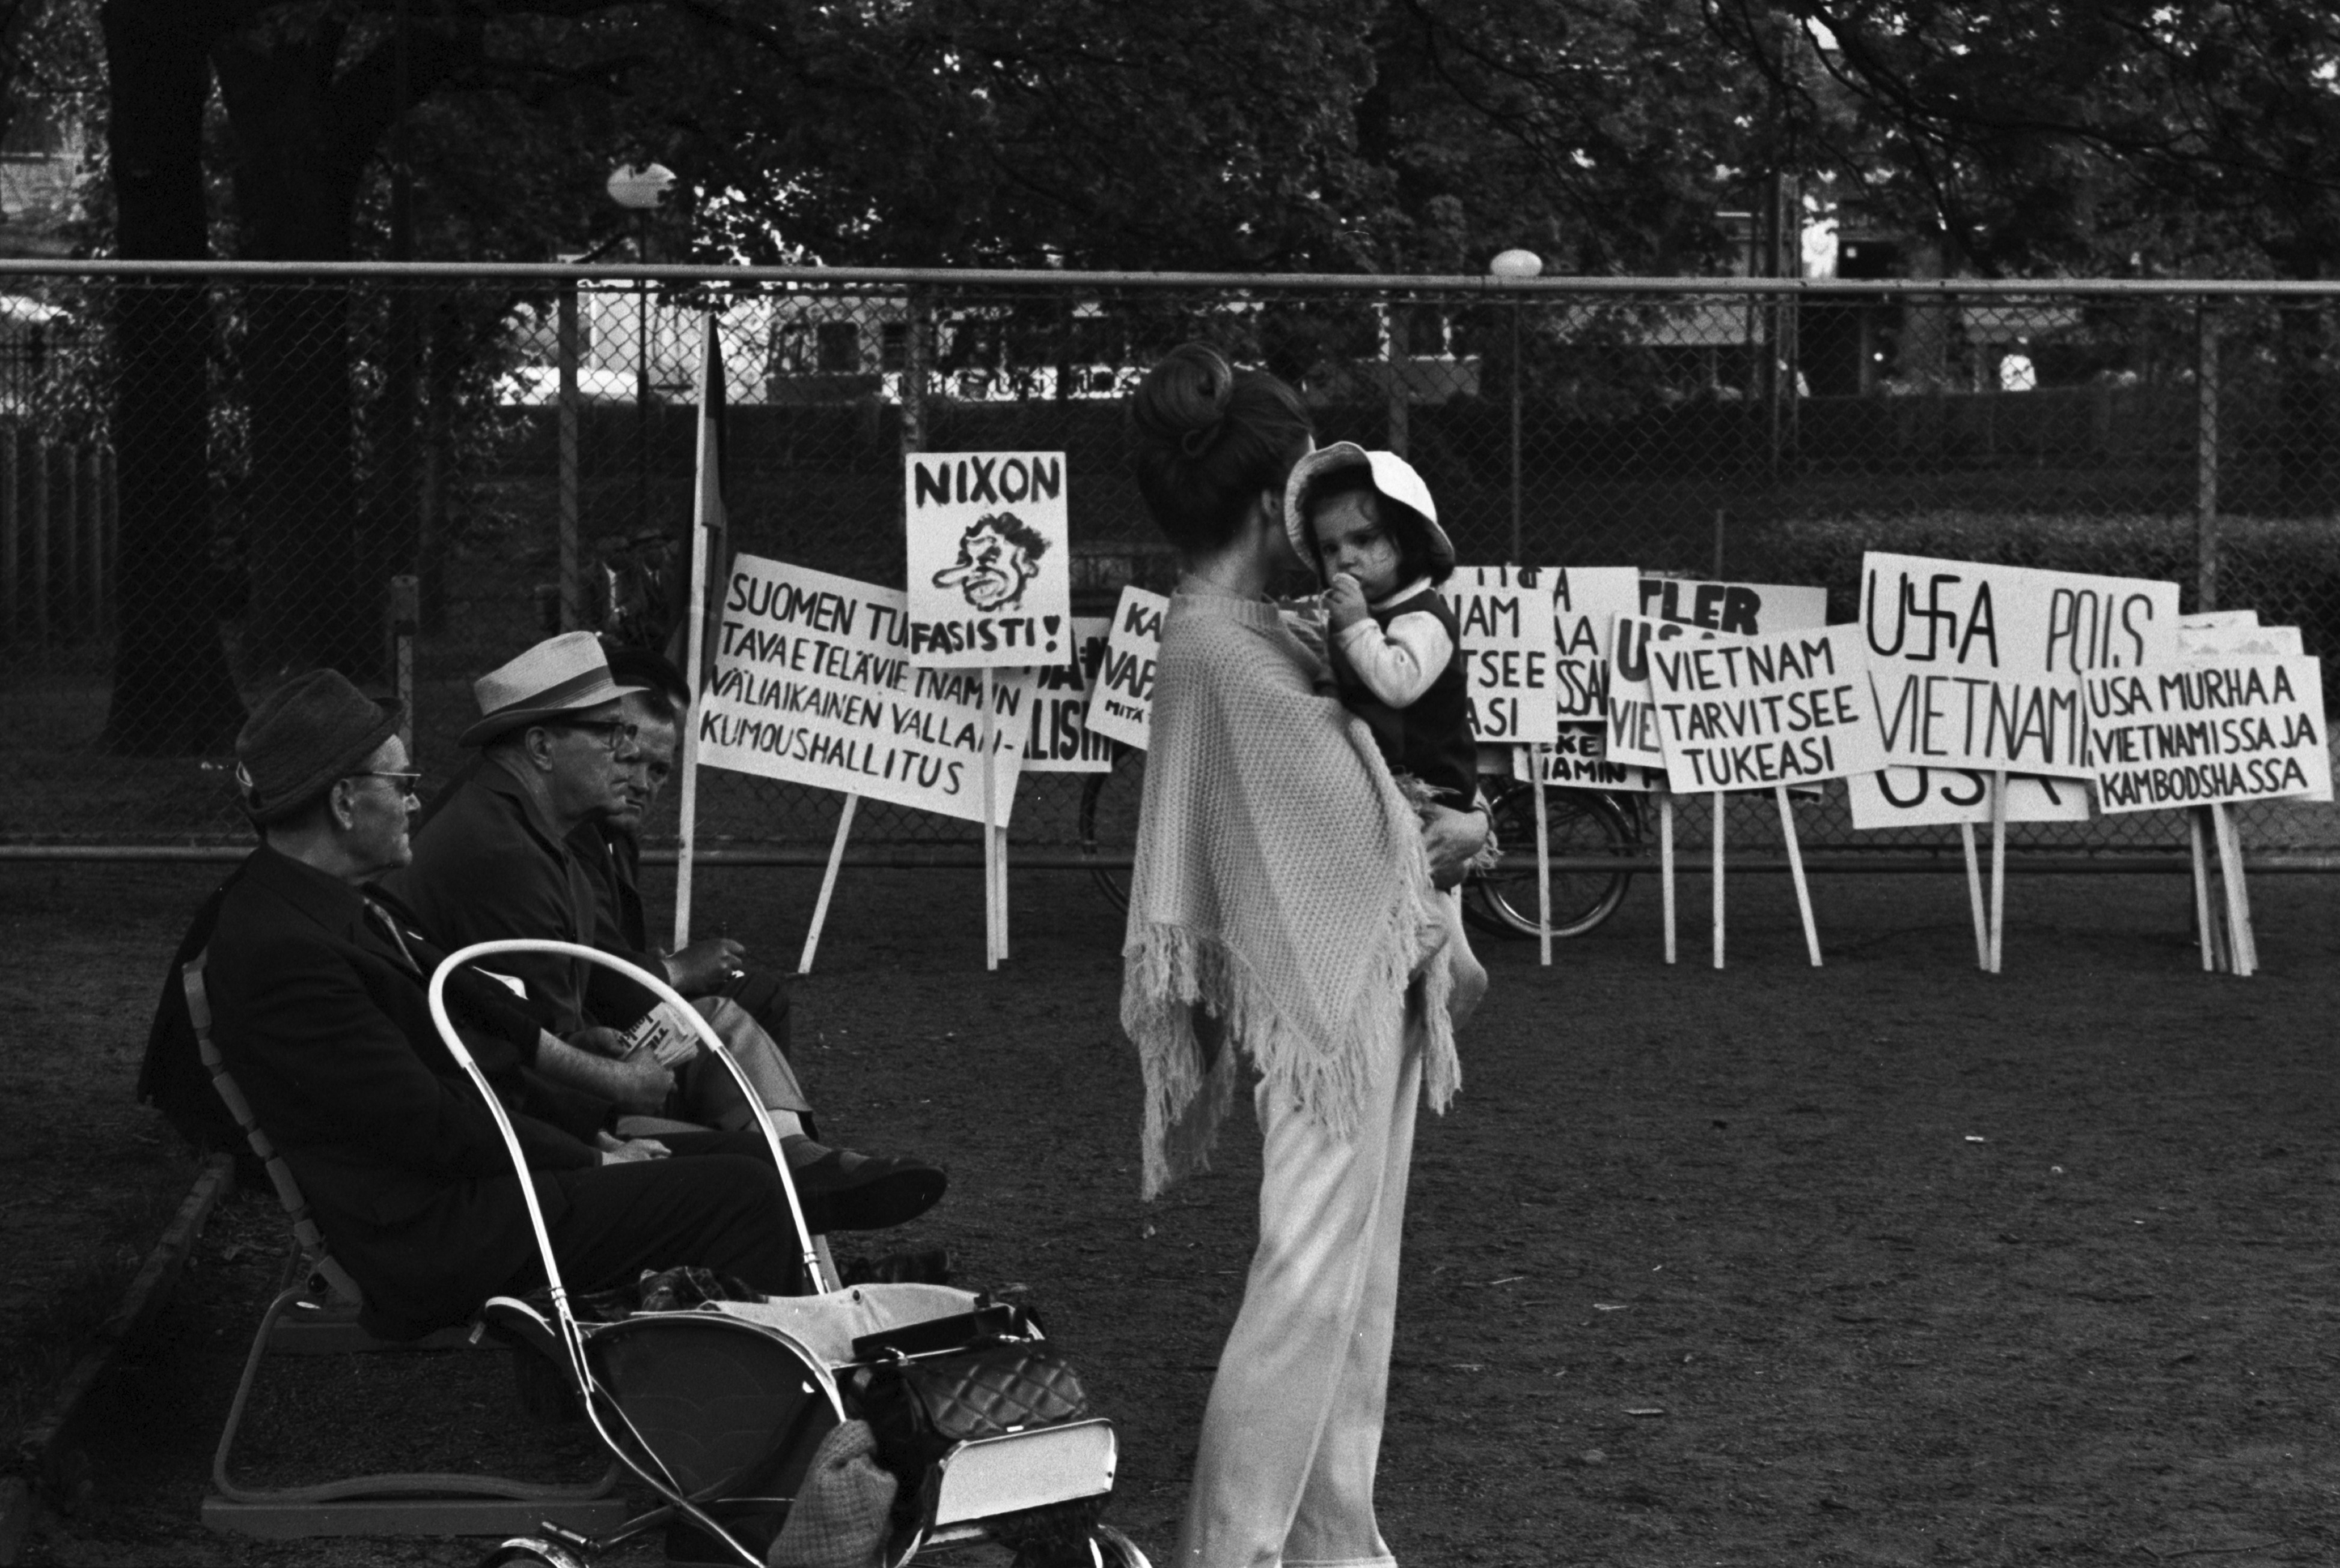 Kaisaniemenpuisto. Nainen lapsi sylissä ja penkillä istuvia miehiä sekä aitaa vasten nojallaan olevia Vietnamin sodan vastaisia mielenosoituskylttejä Kaisaniemenpuistossa. Puistossa meneillään Vietnamin sodan ja imperialismin vastainen mielenosoitus.